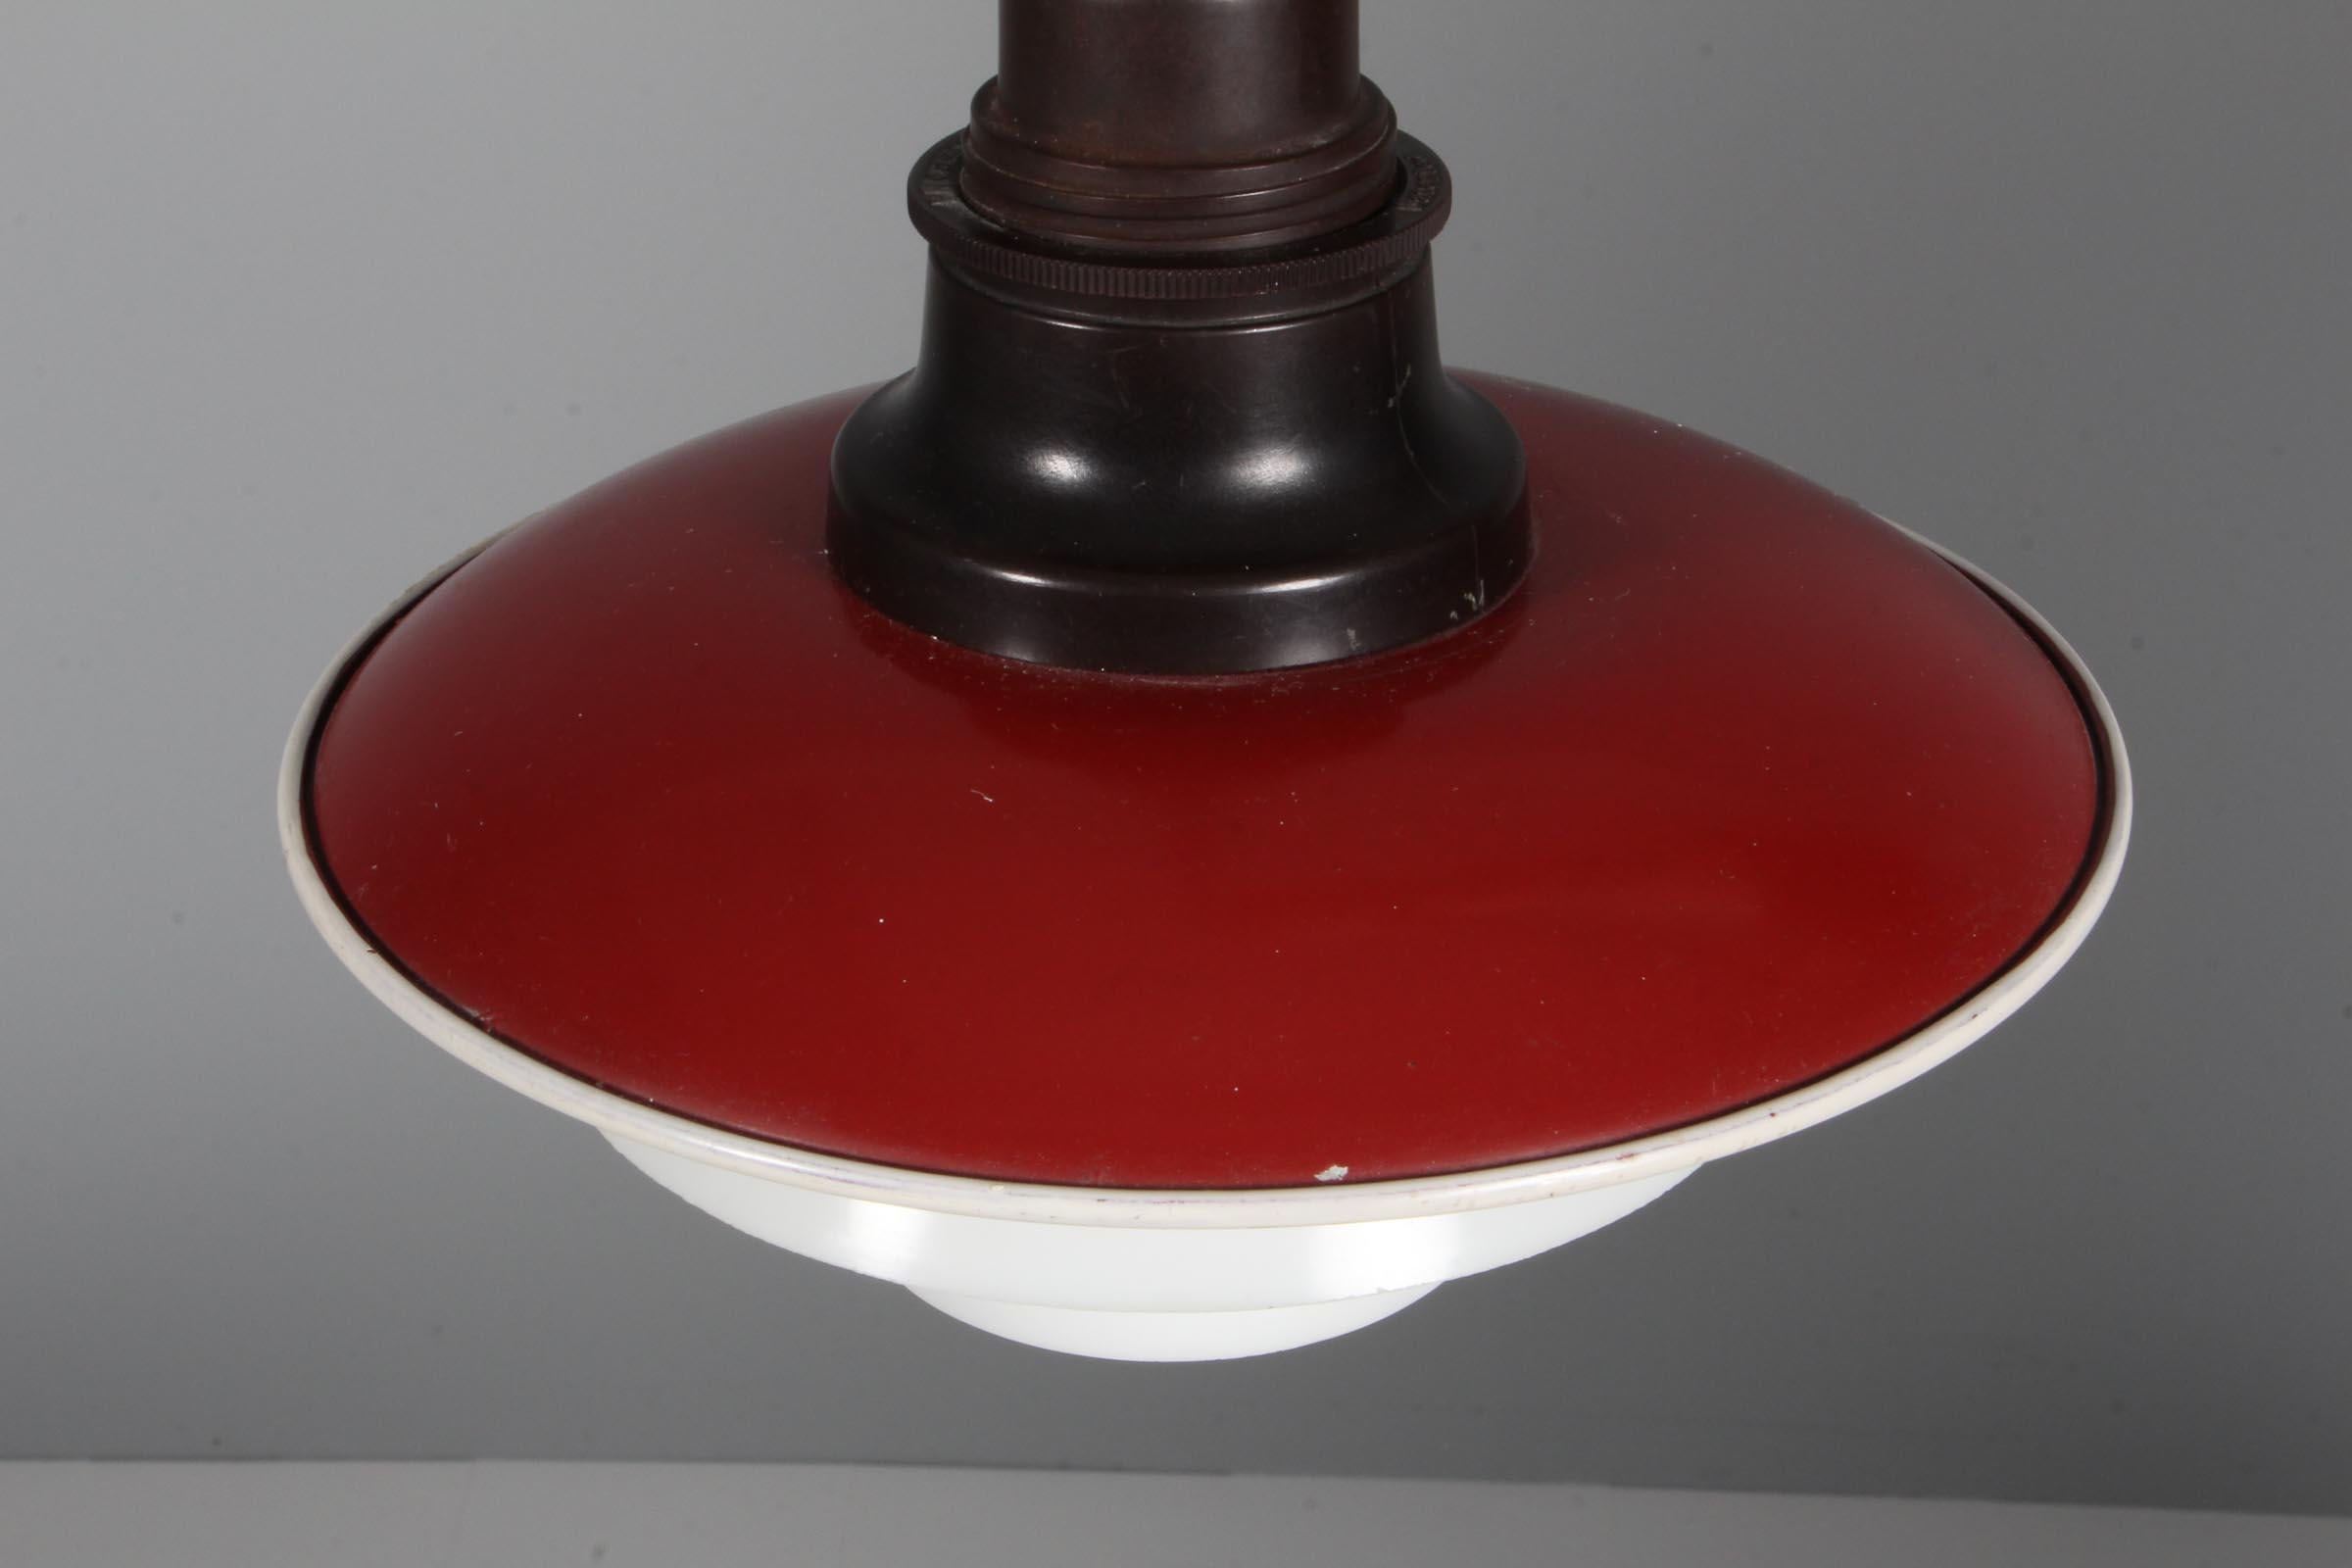 Lampe suspendue Poul Henningsen PH 2/2. Nuance de cuivre laqué blanc et rouge. L'abat-jour du milieu et du bas est en verre dépoli. 

Marqué Patented, fabriqué par Louis Poulsen dans les années 1930.